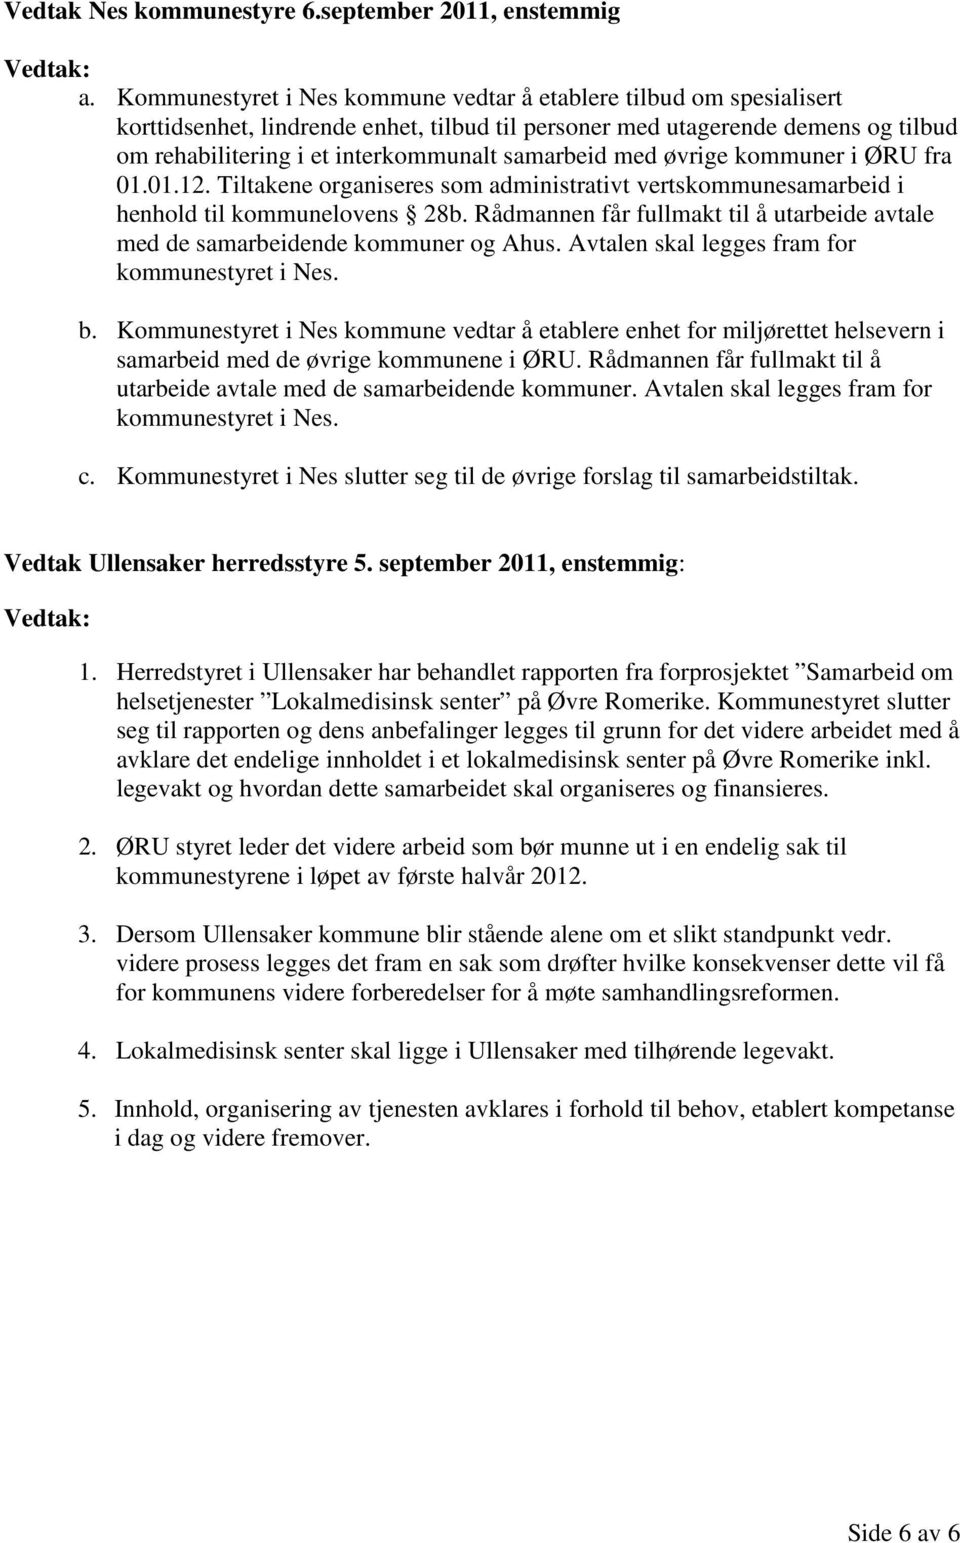 samarbeid med øvrige kommuner i ØRU fra 01.01.12. Tiltakene organiseres som administrativt vertskommunesamarbeid i henhold til kommunelovens 28b.